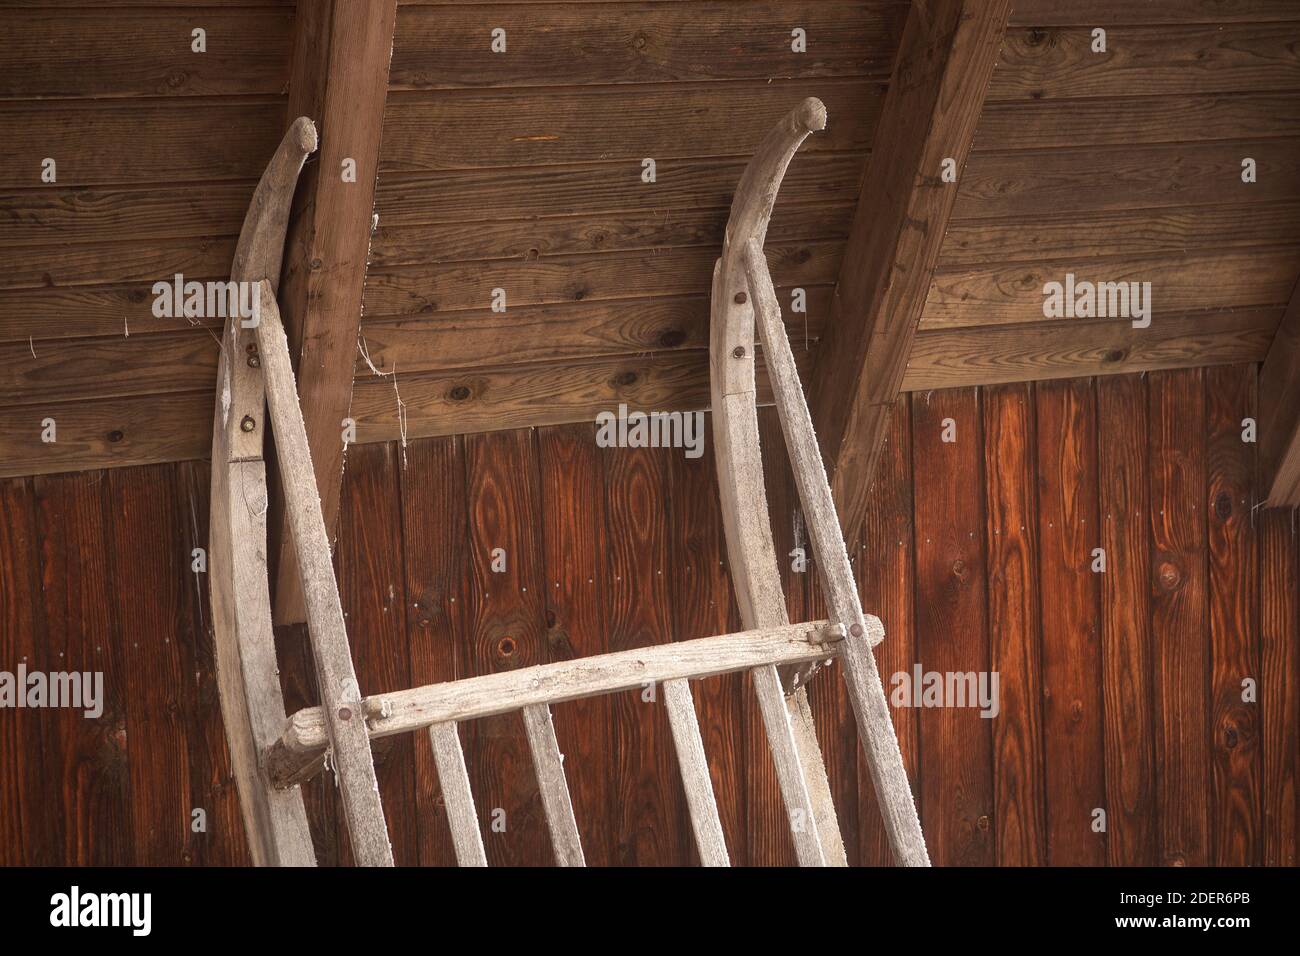 Holzschlitten aus Vintage lehnt sich an die Wand. Rustikale Scheune in den  alpen mit Retro-Schlitten Nahaufnahme Stockfotografie - Alamy